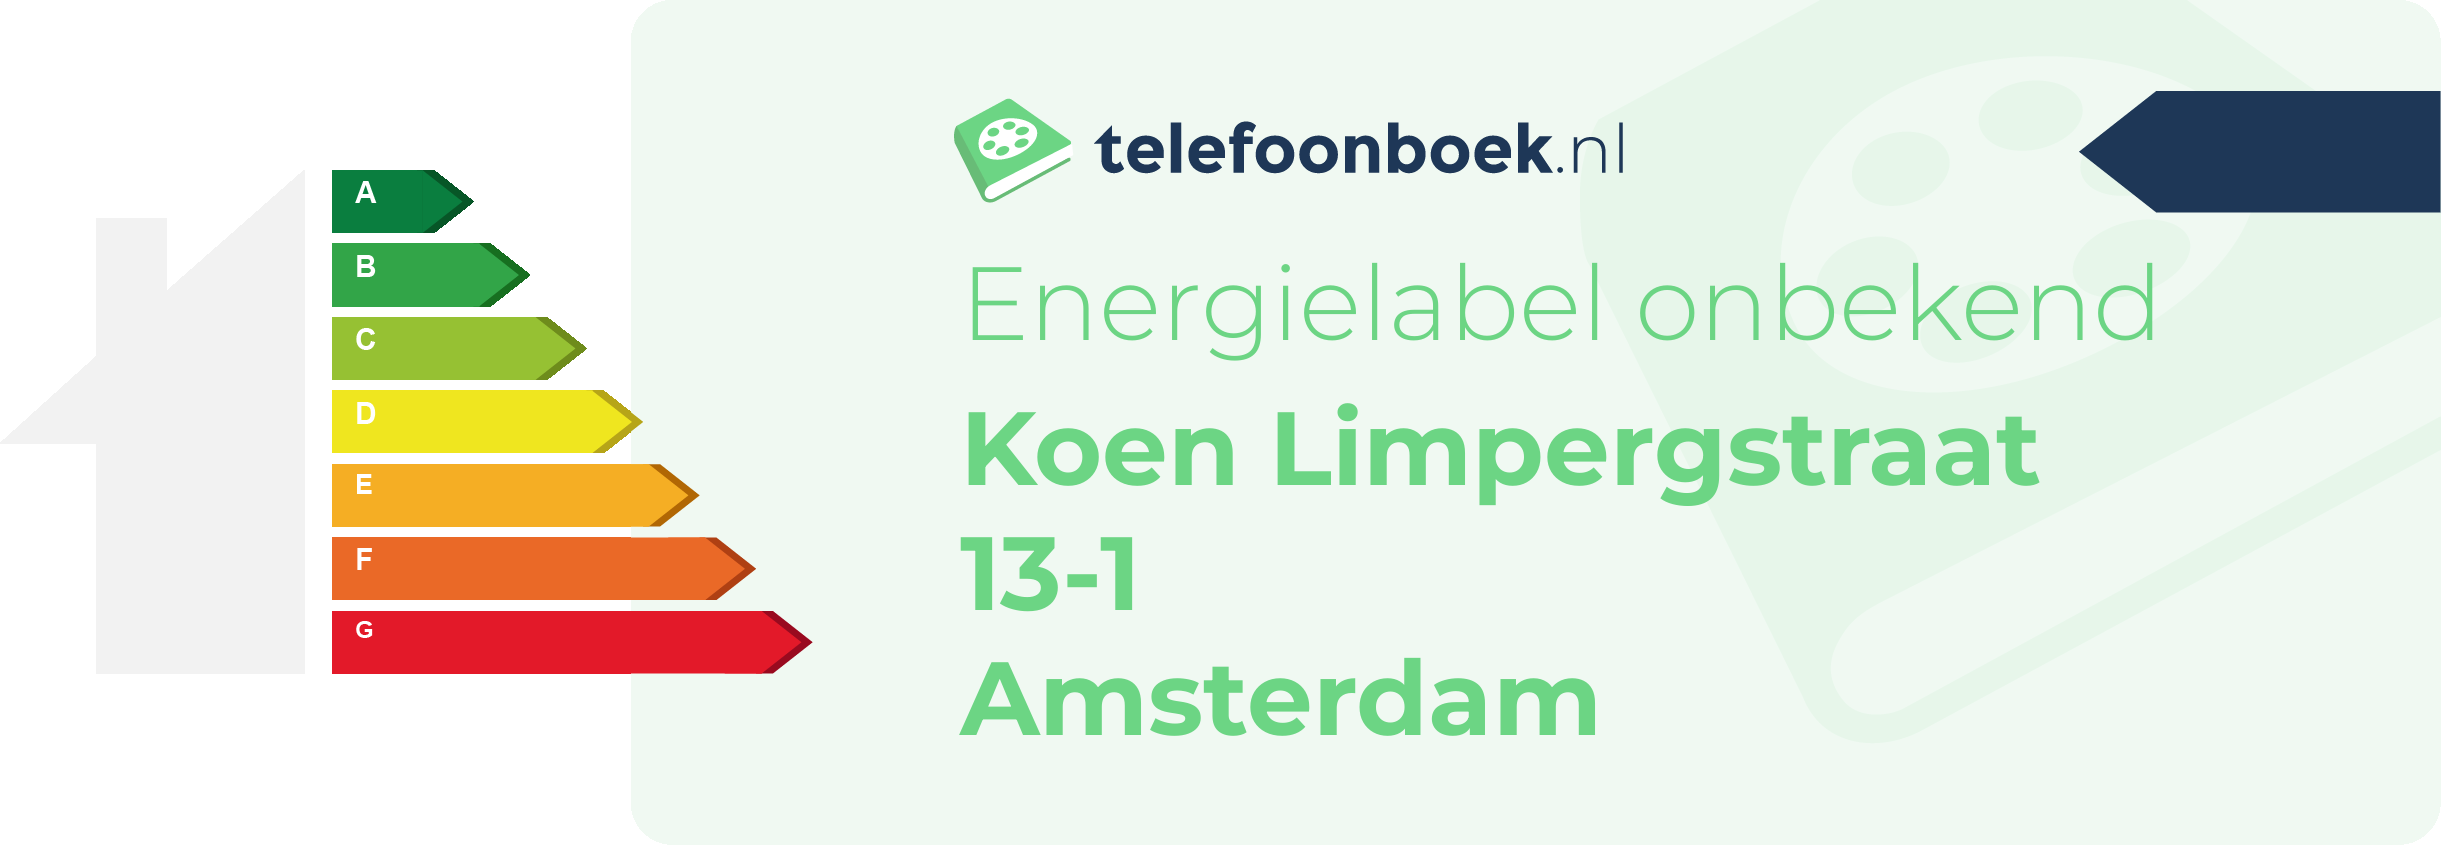 Energielabel Koen Limpergstraat 13-1 Amsterdam